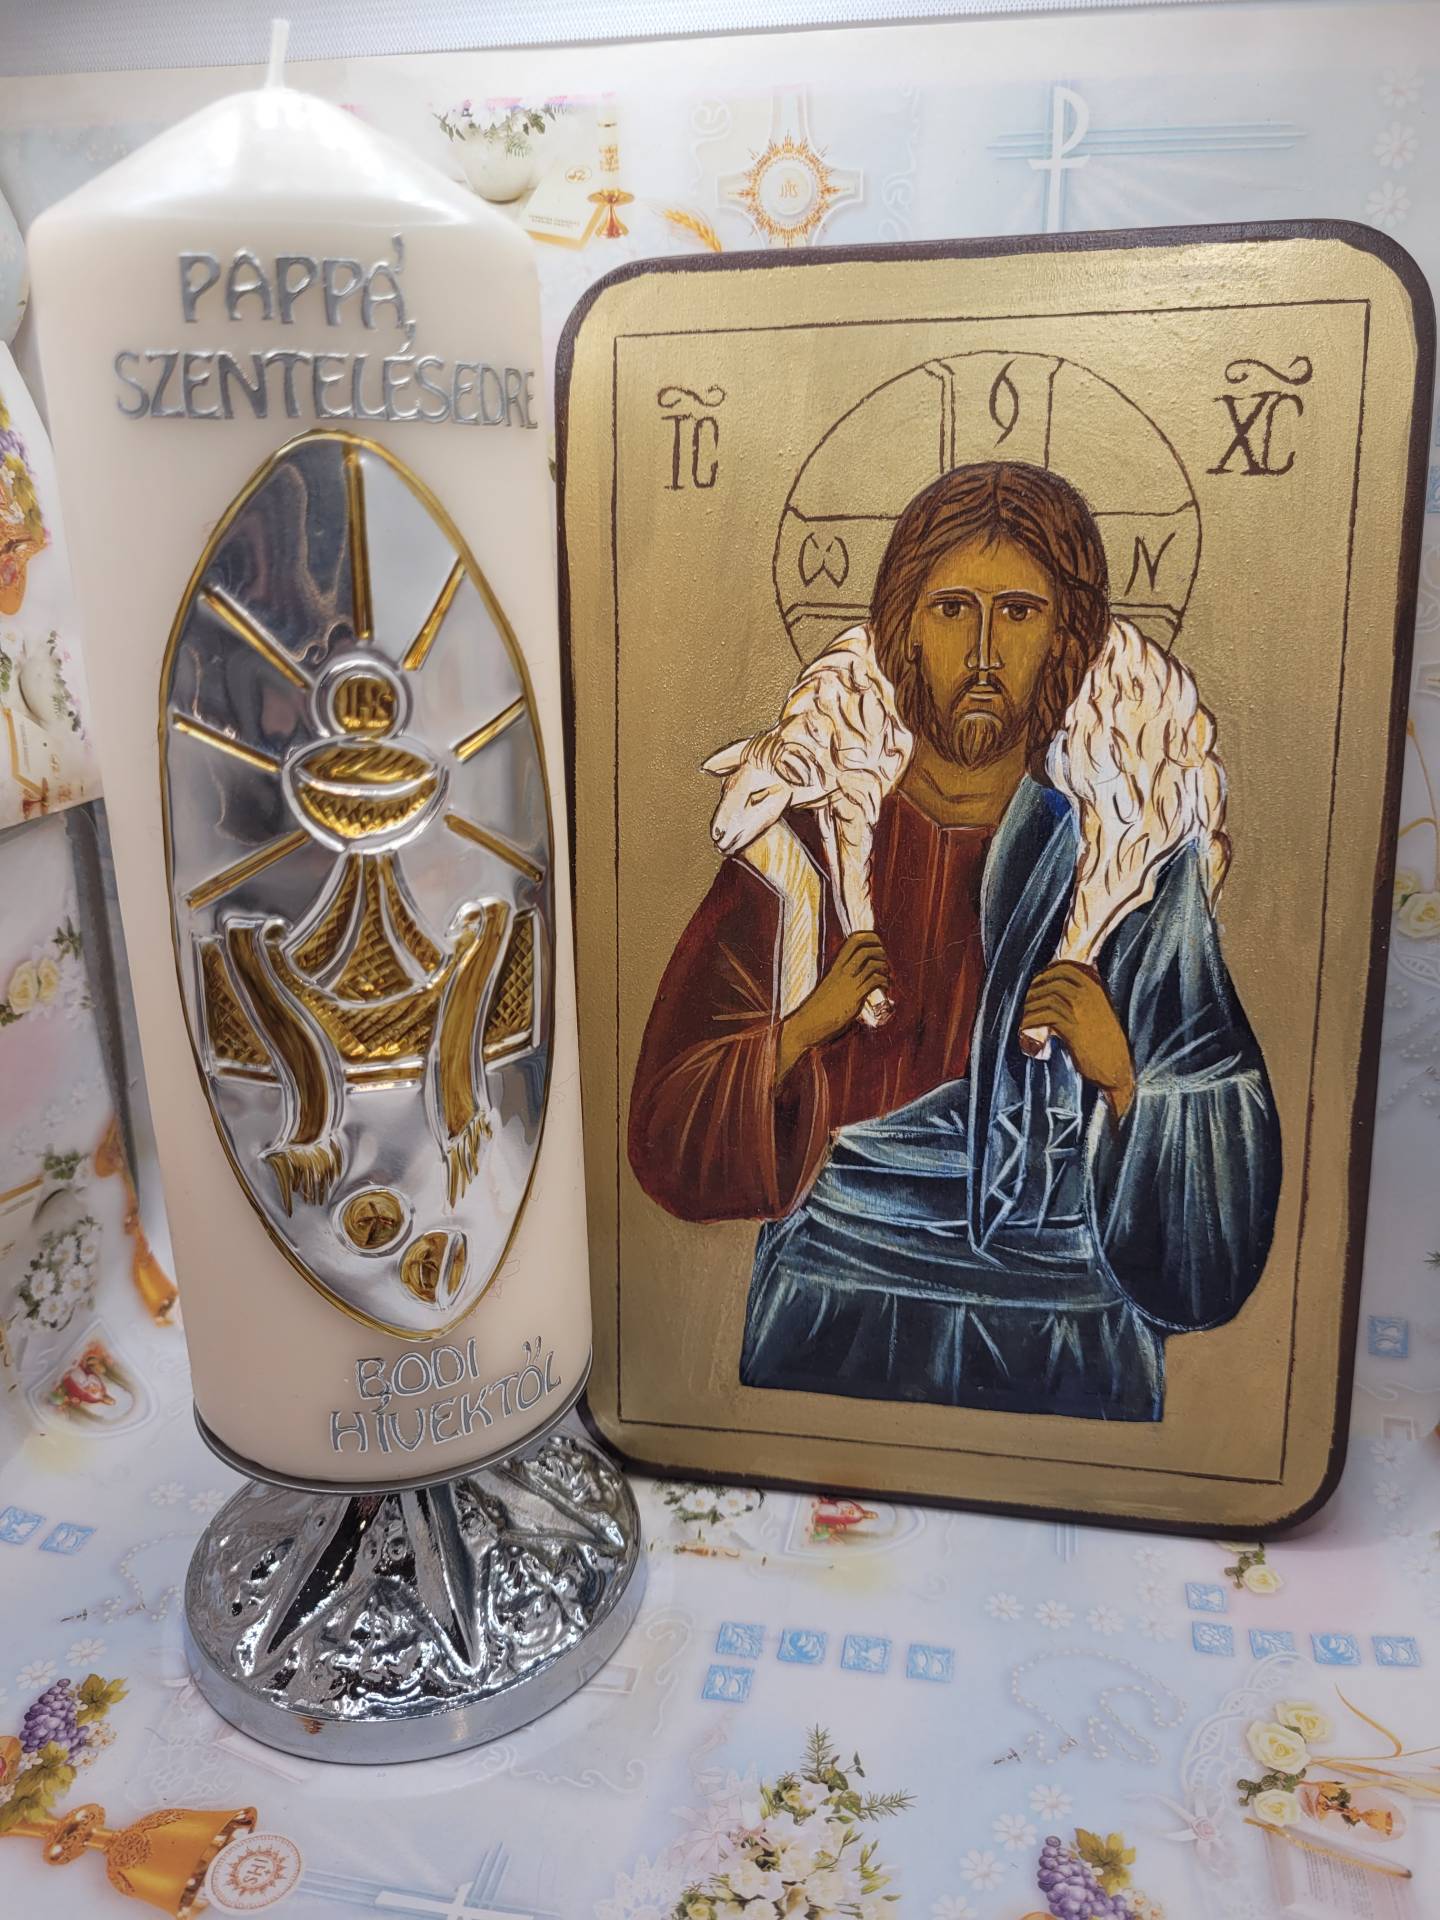 Papok részére feliratozzuk a gyertyát alkalmakra,megemlékezésre+ kézzal festett ikon szerzetes munkája 